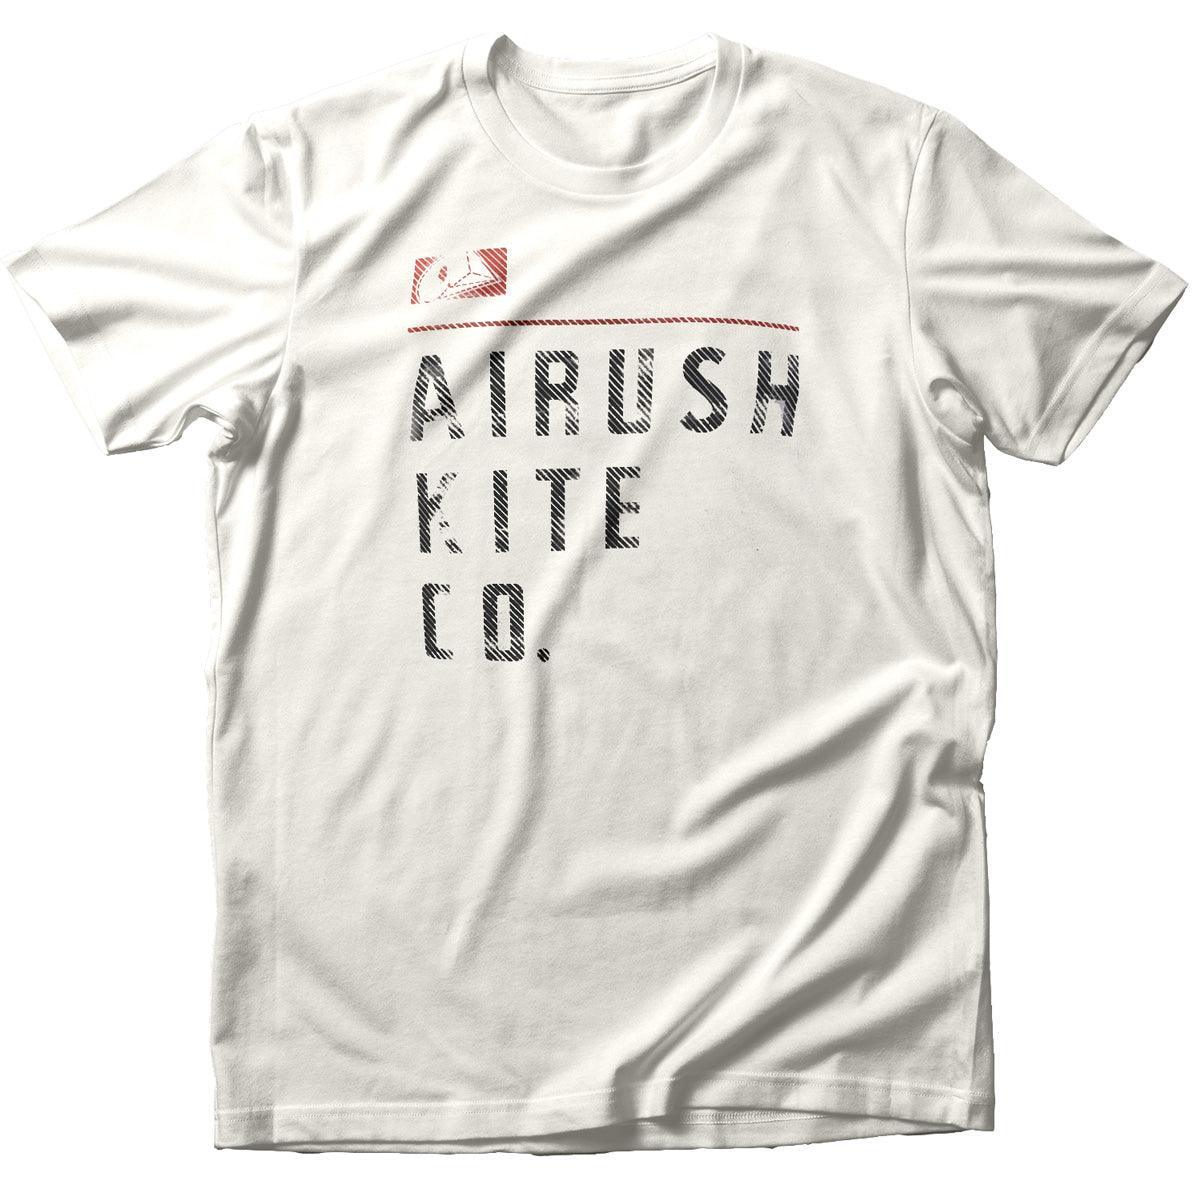 Airush Kite Co T-Shirt - Powerkiteshop